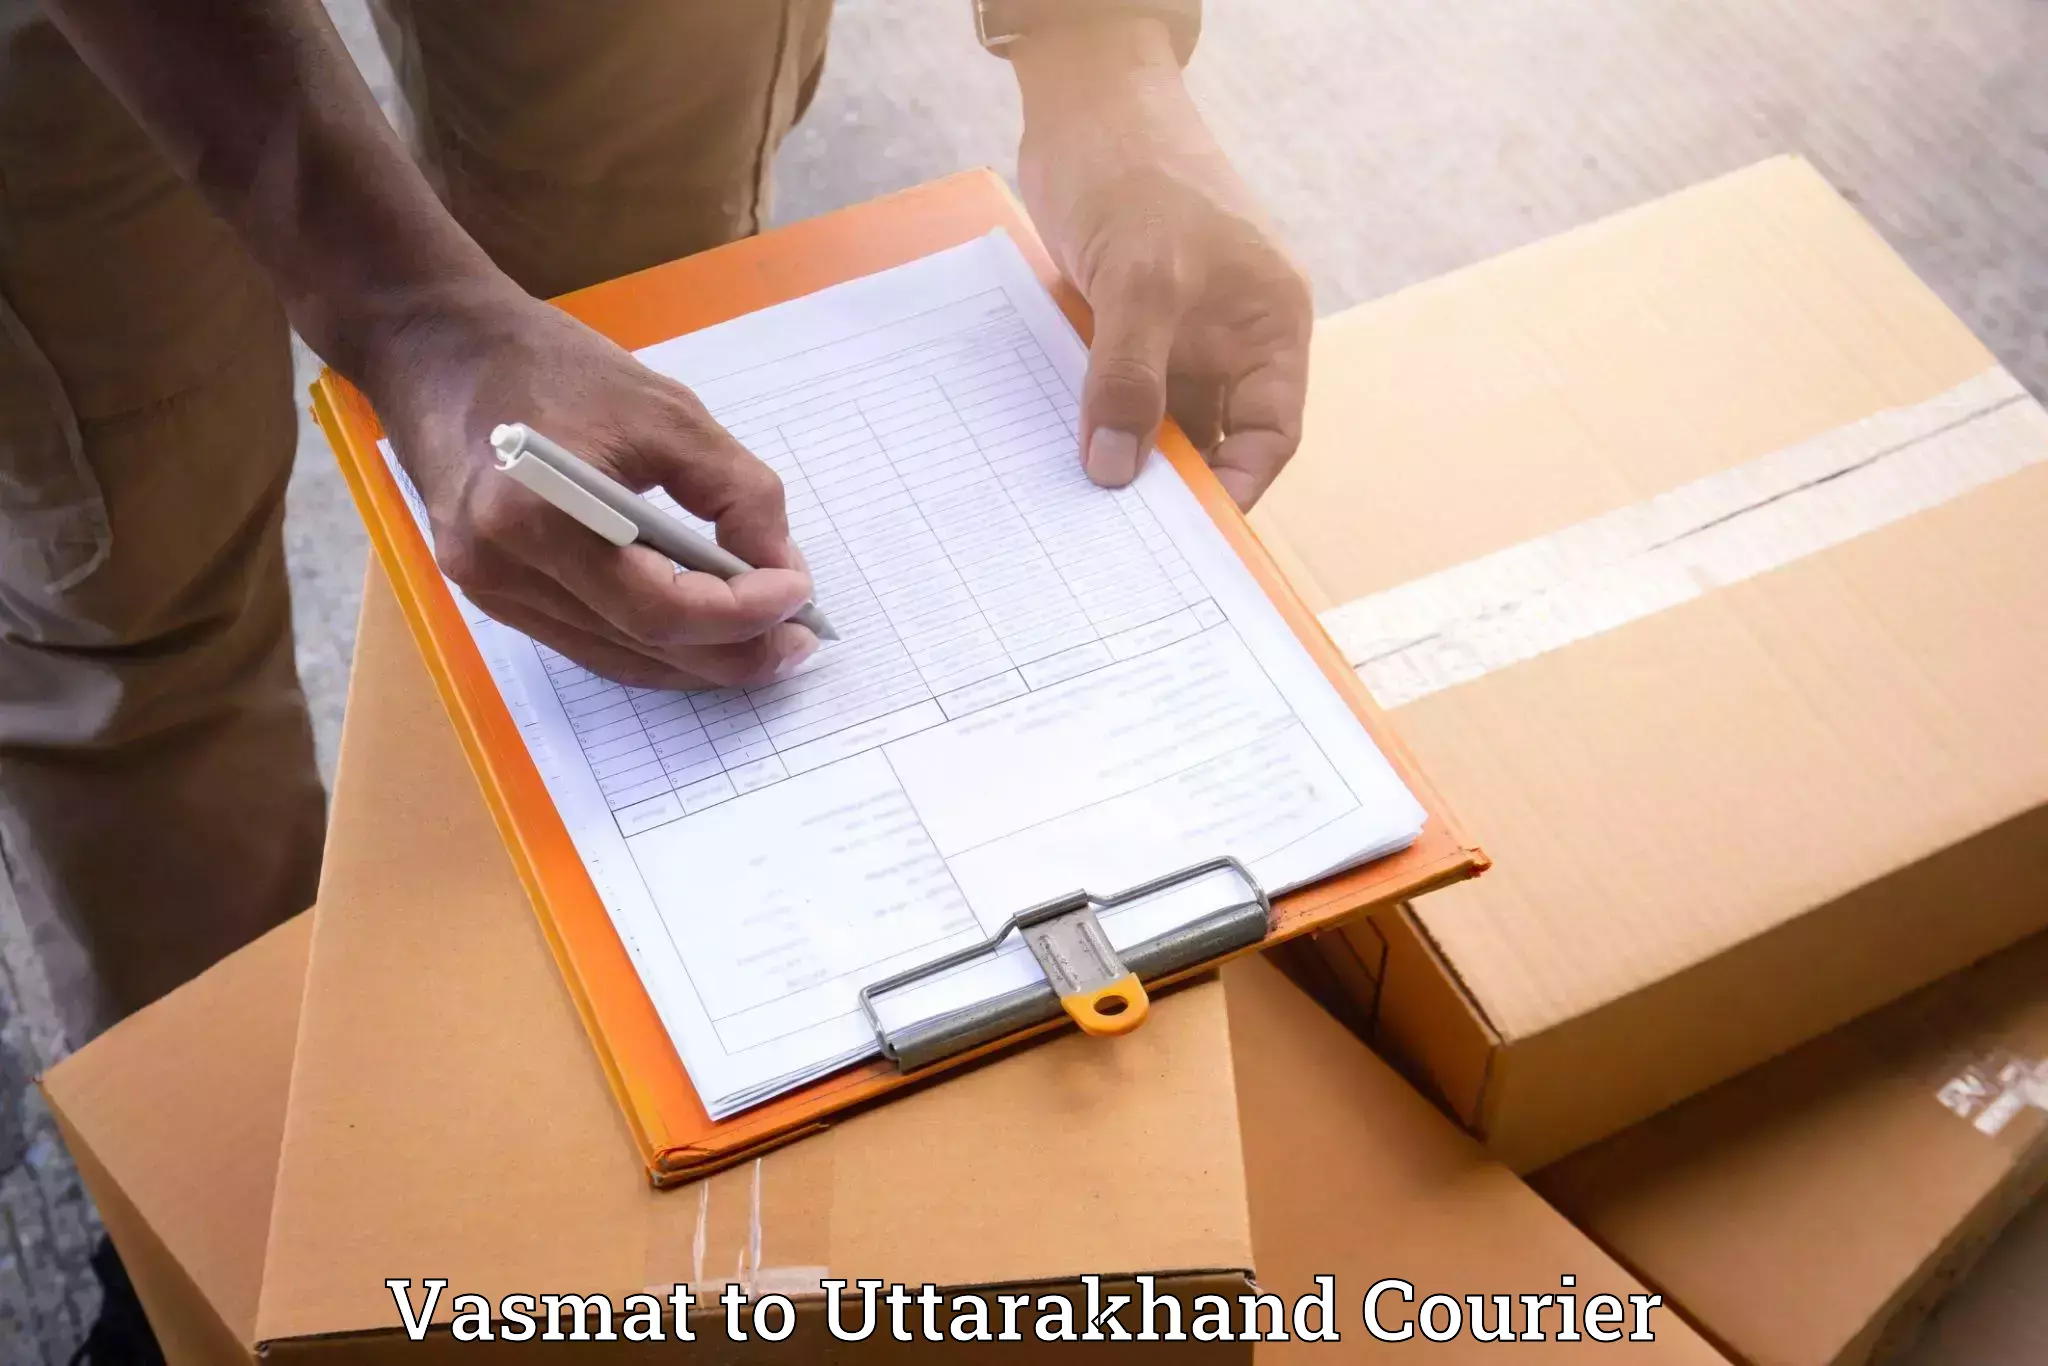 Furniture transport experts Vasmat to Kashipur